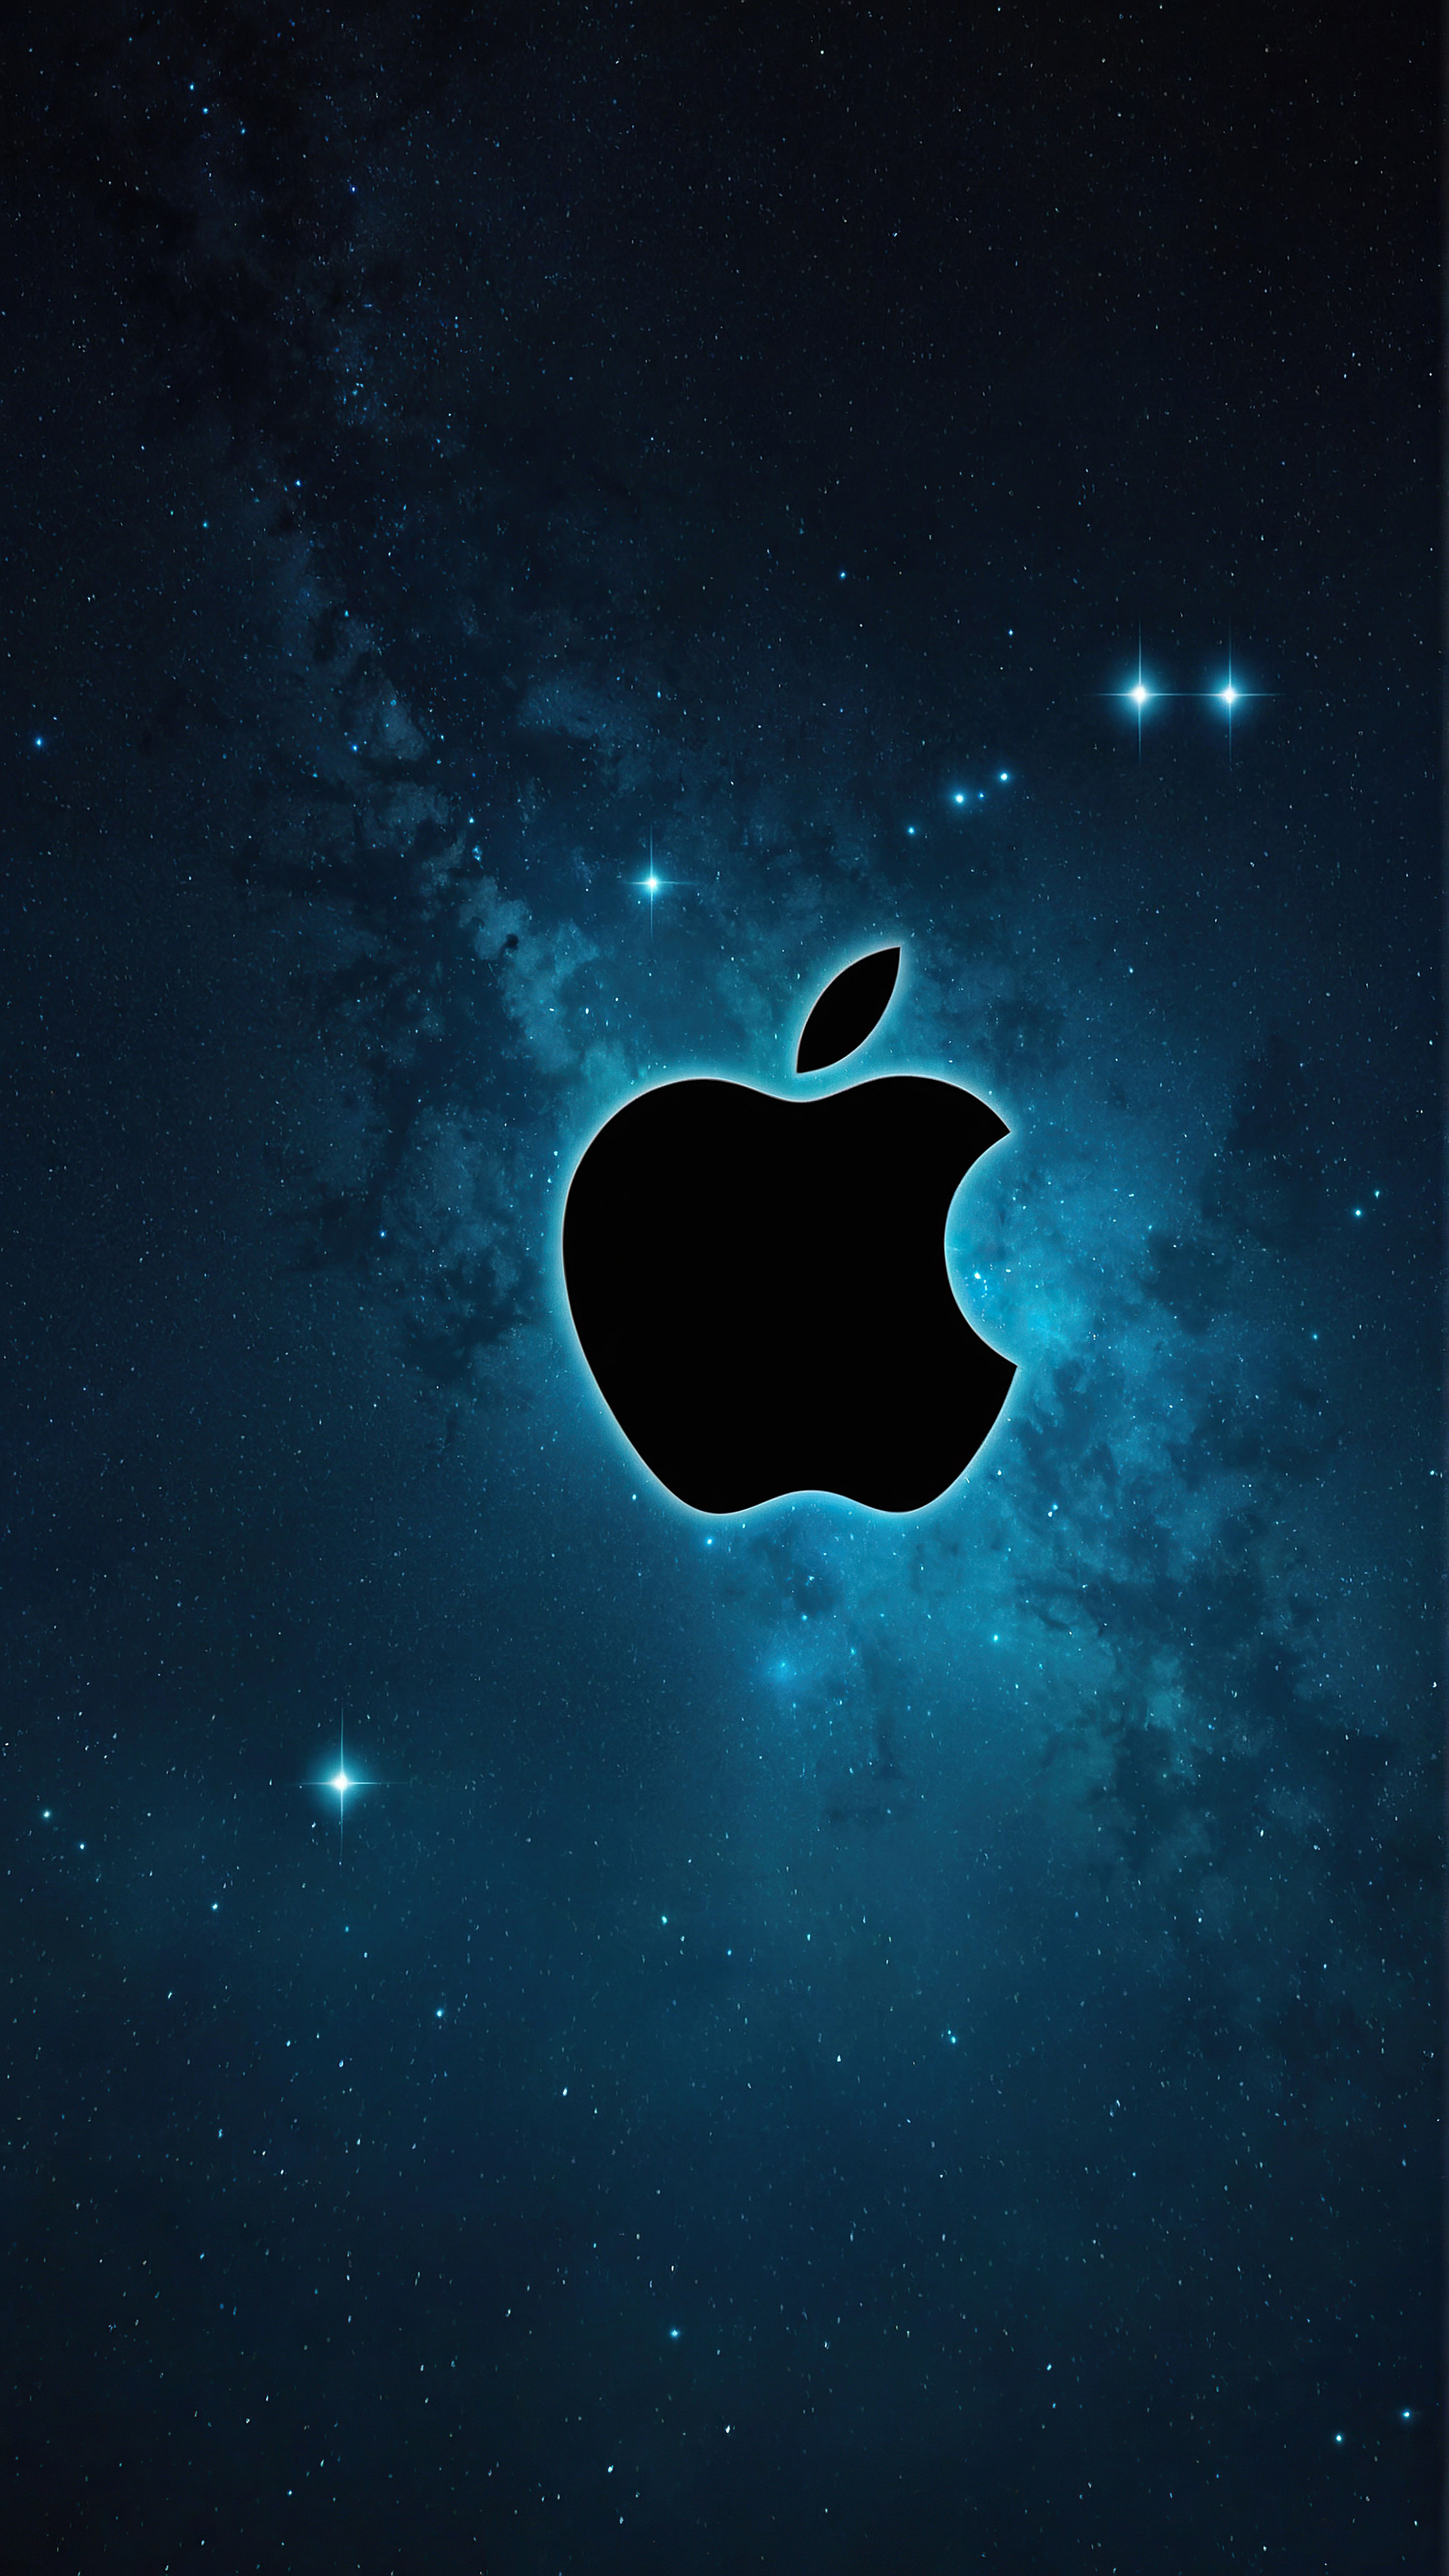 Expérimentez la vitesse et la puissance du changement avec notre meilleur fond d'écran iPhone style, mettant en valeur le logo Apple noir et élégant, positionné au centre contre un fond hypnotisant de nuances de bleu et de turquoise, ressemblant à un ciel étoilé.